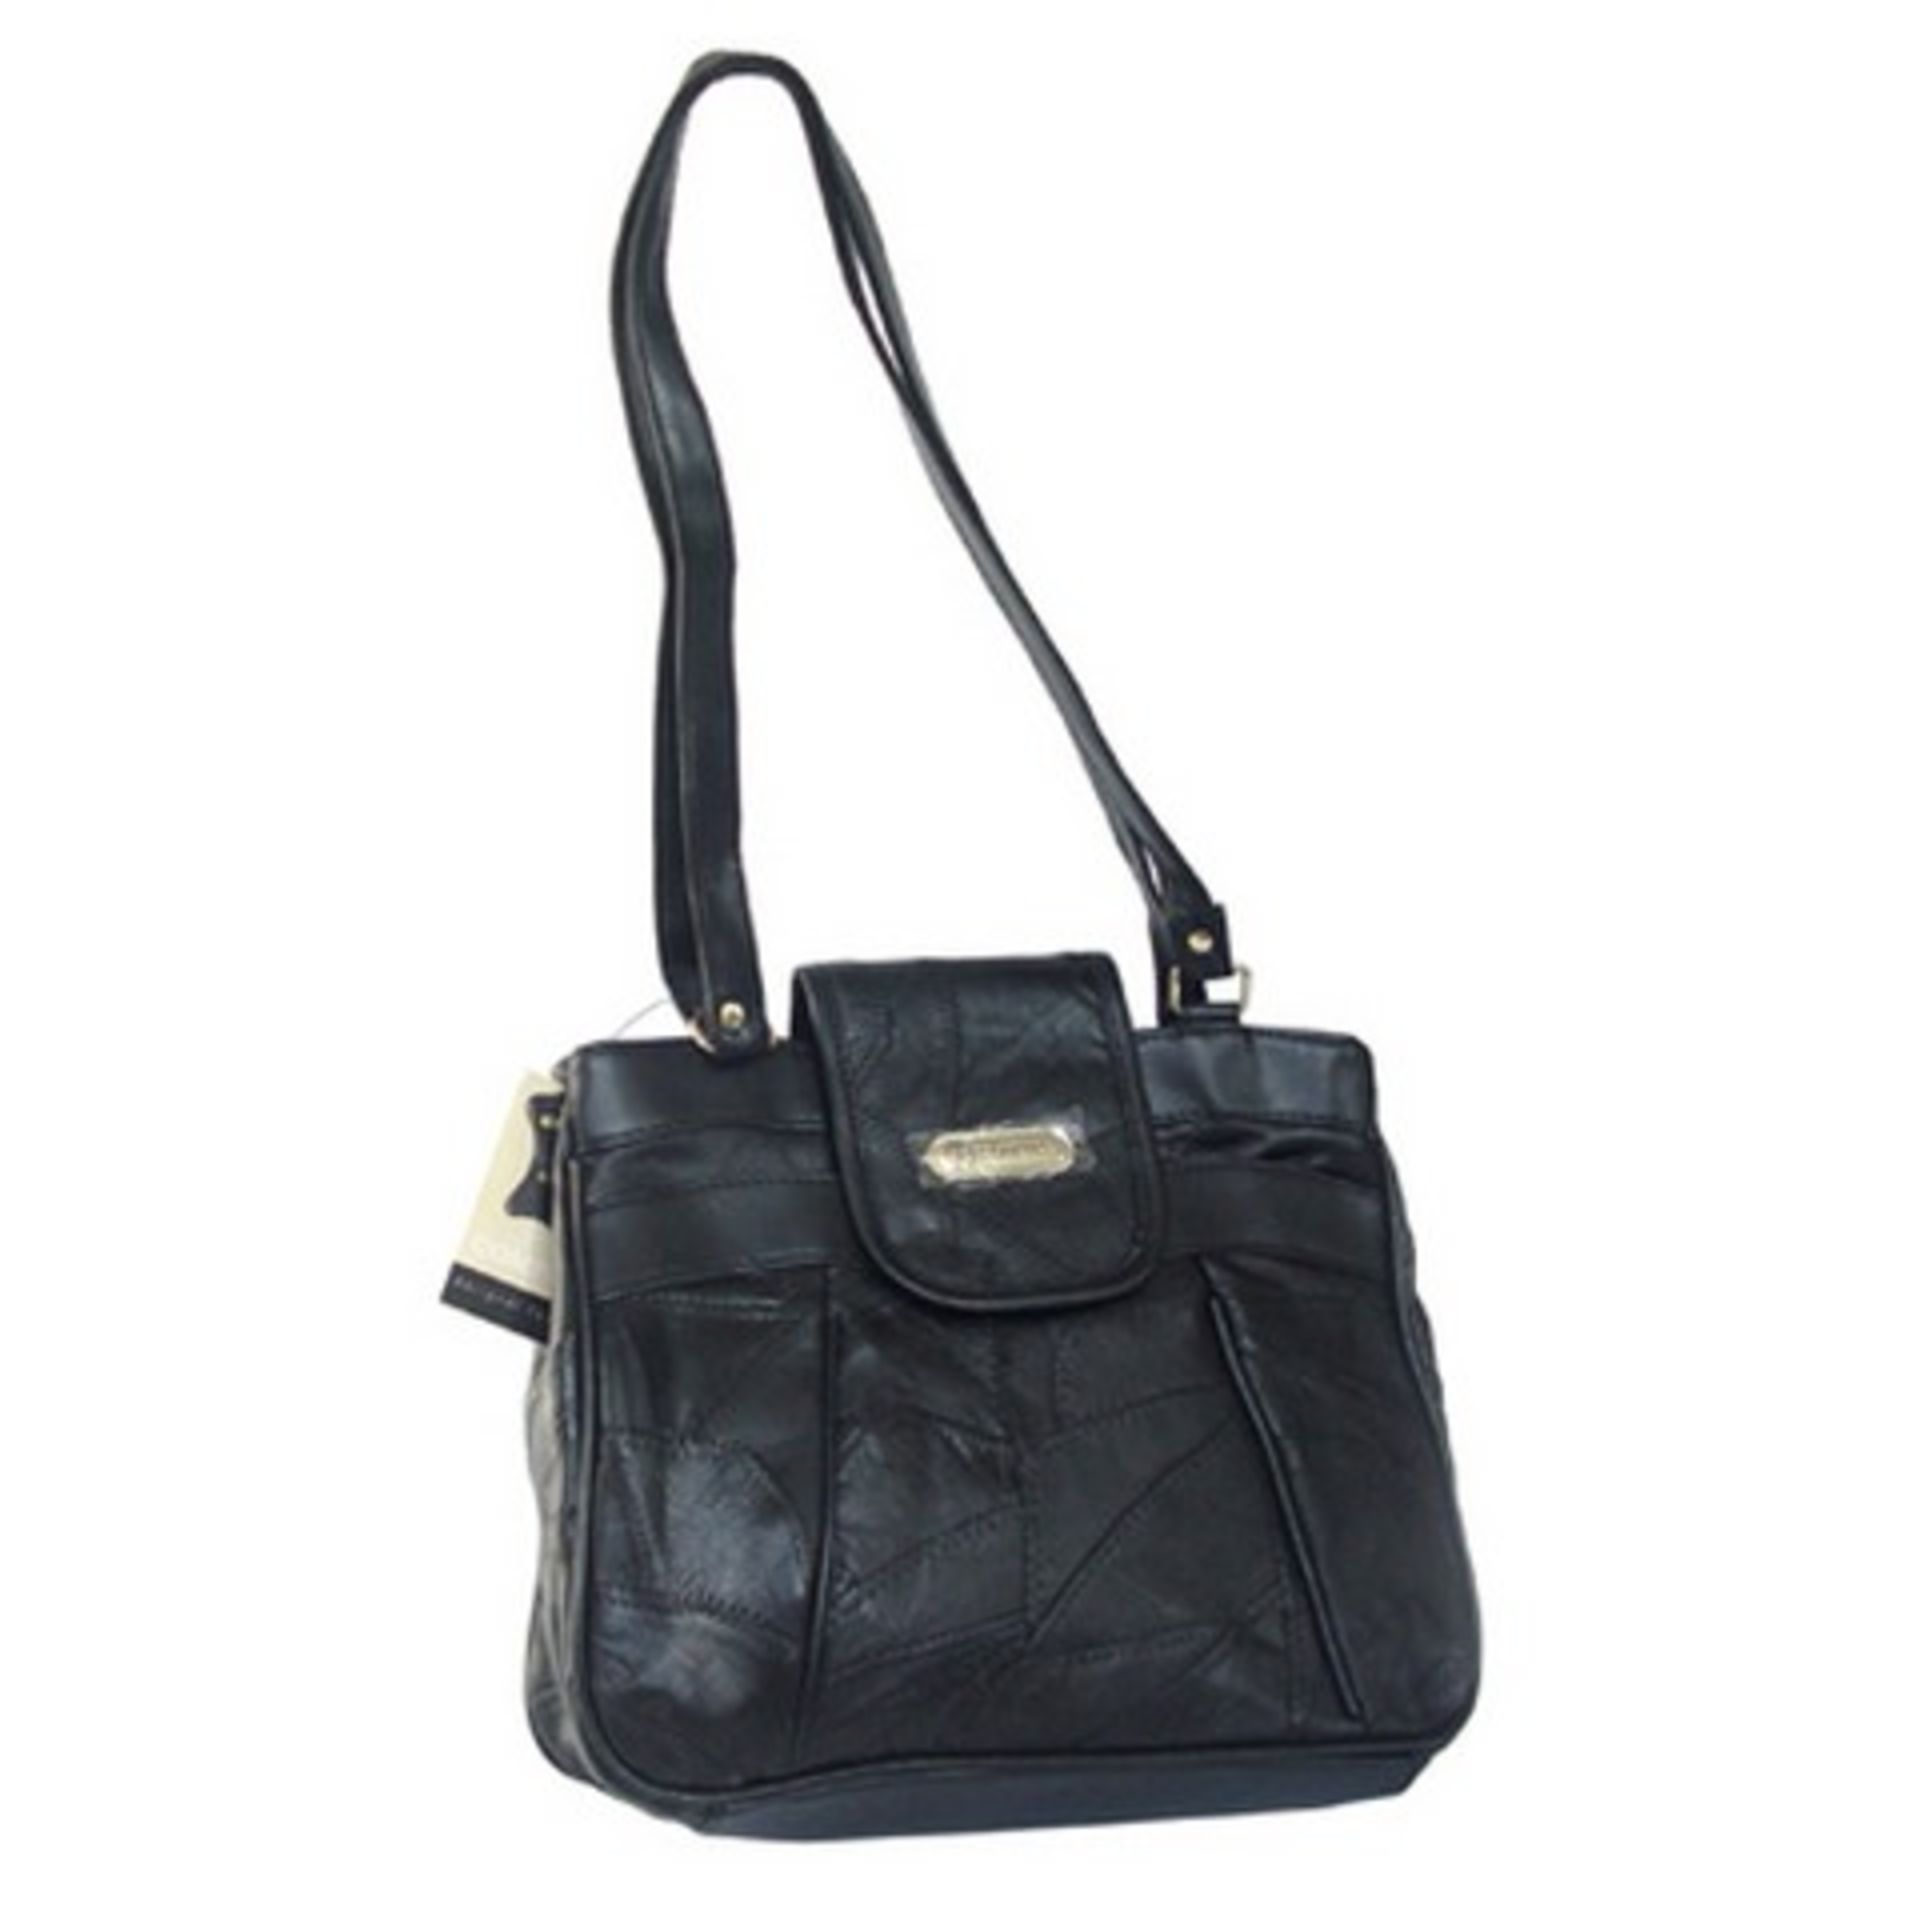 V Brand New Leather Ladies Black Handbag with shoulder strap